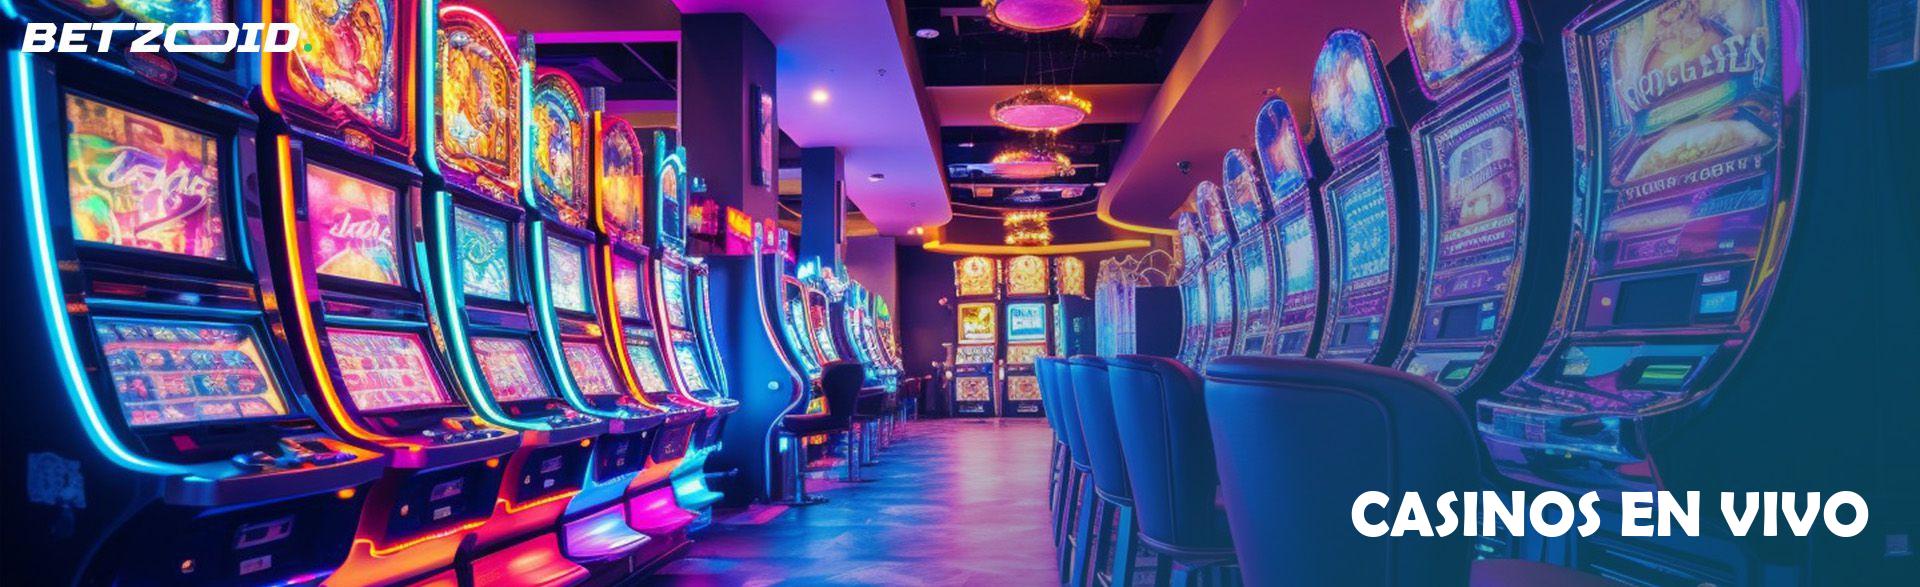 Casinos En Vivo.